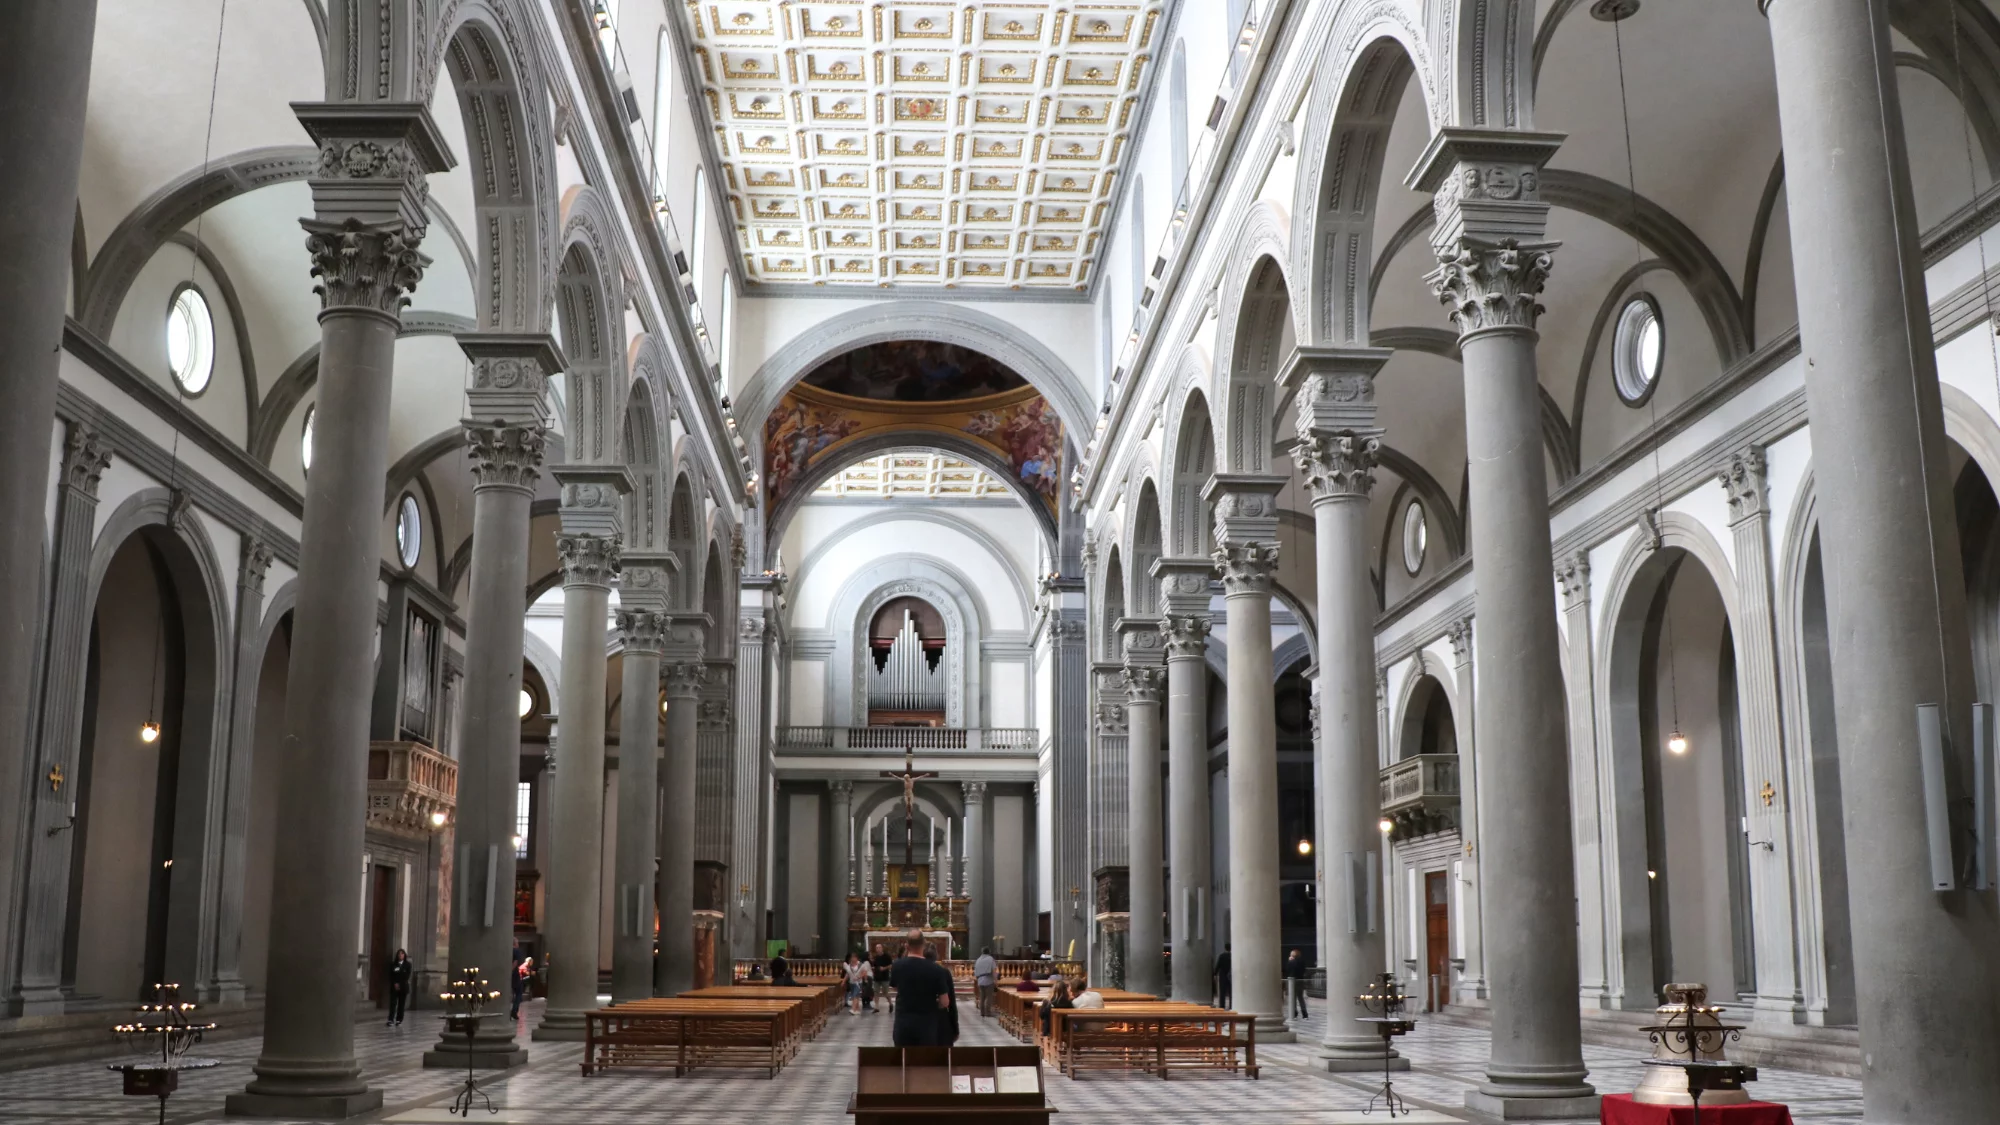 Visit San Lorenzo Basilica in Florence for Renaissance Art